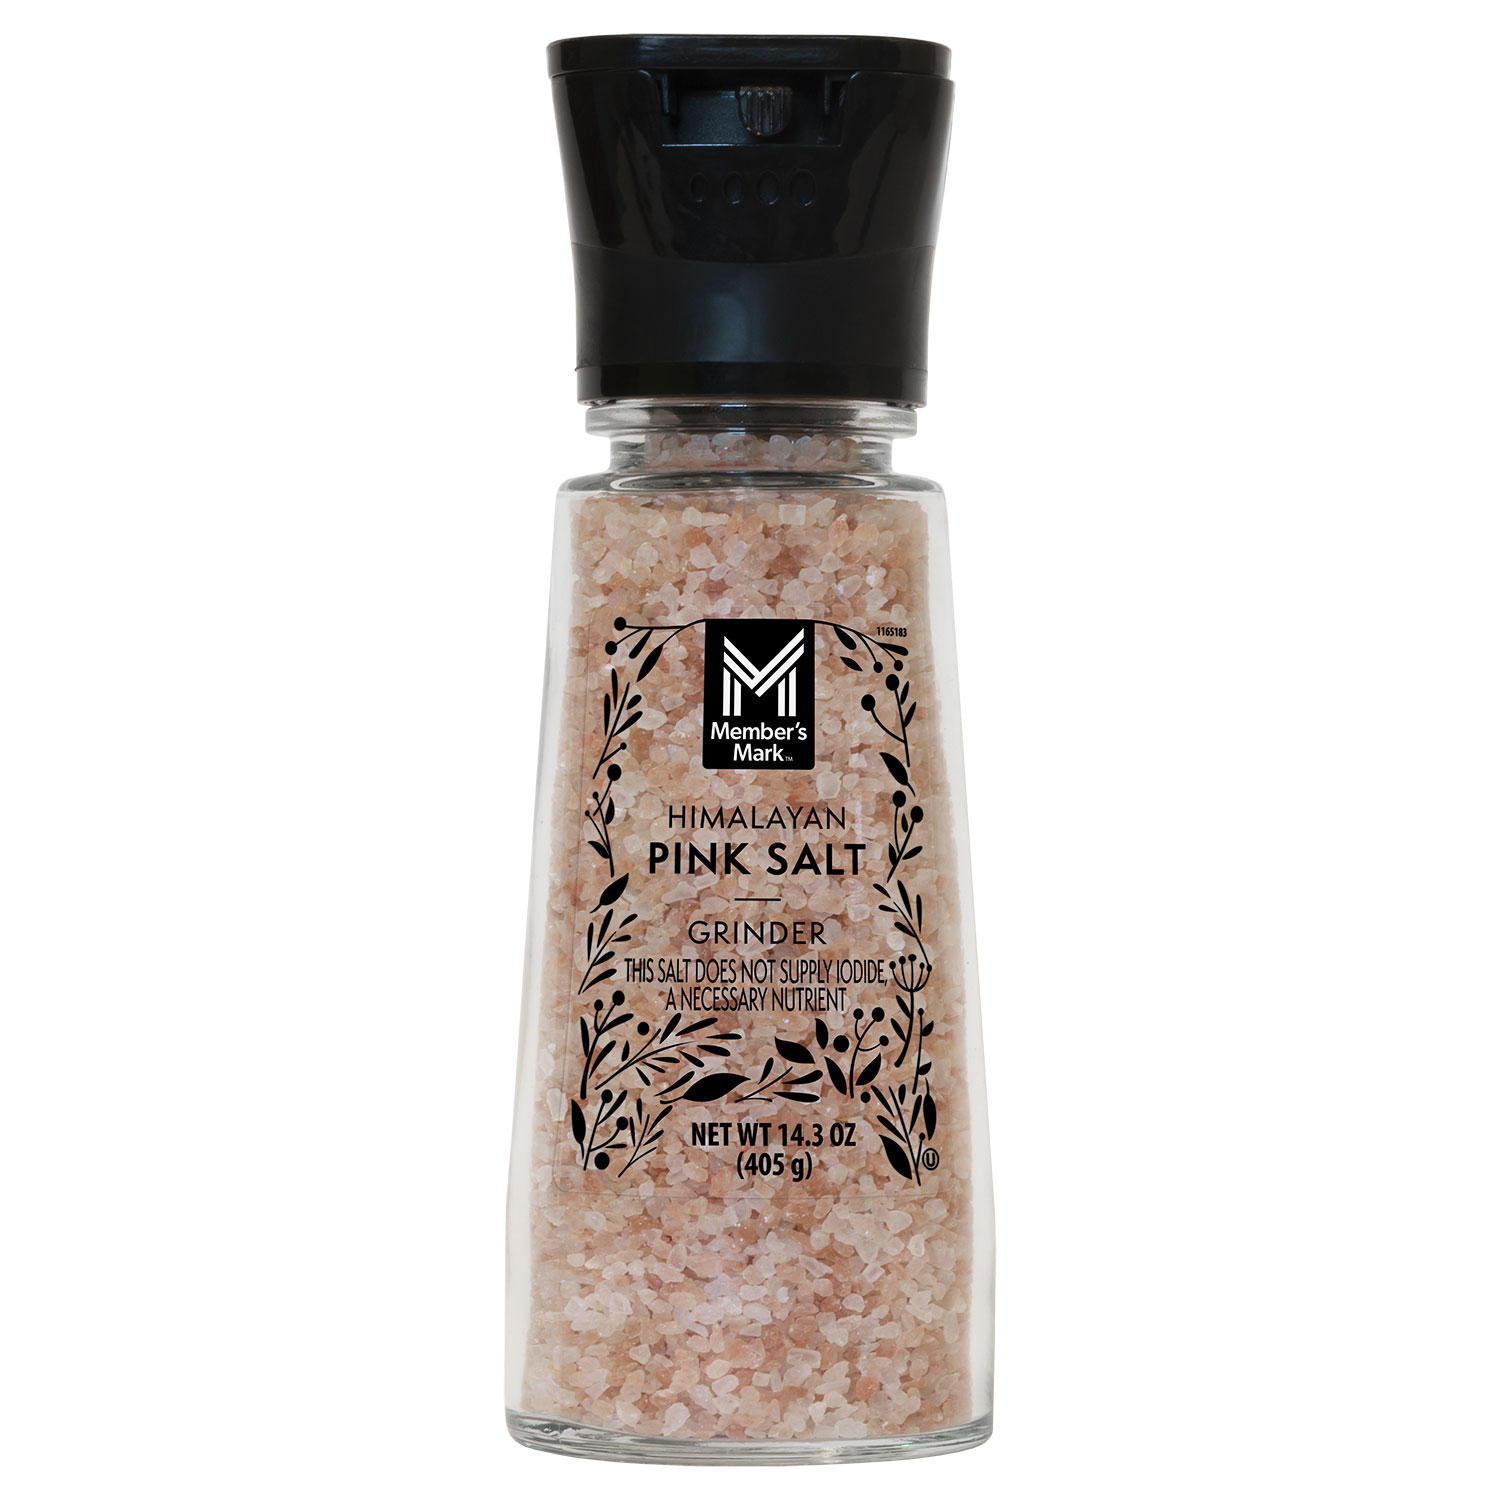 Member's Mark Himalayan Pink Salt Grinder, 14.3 oz.